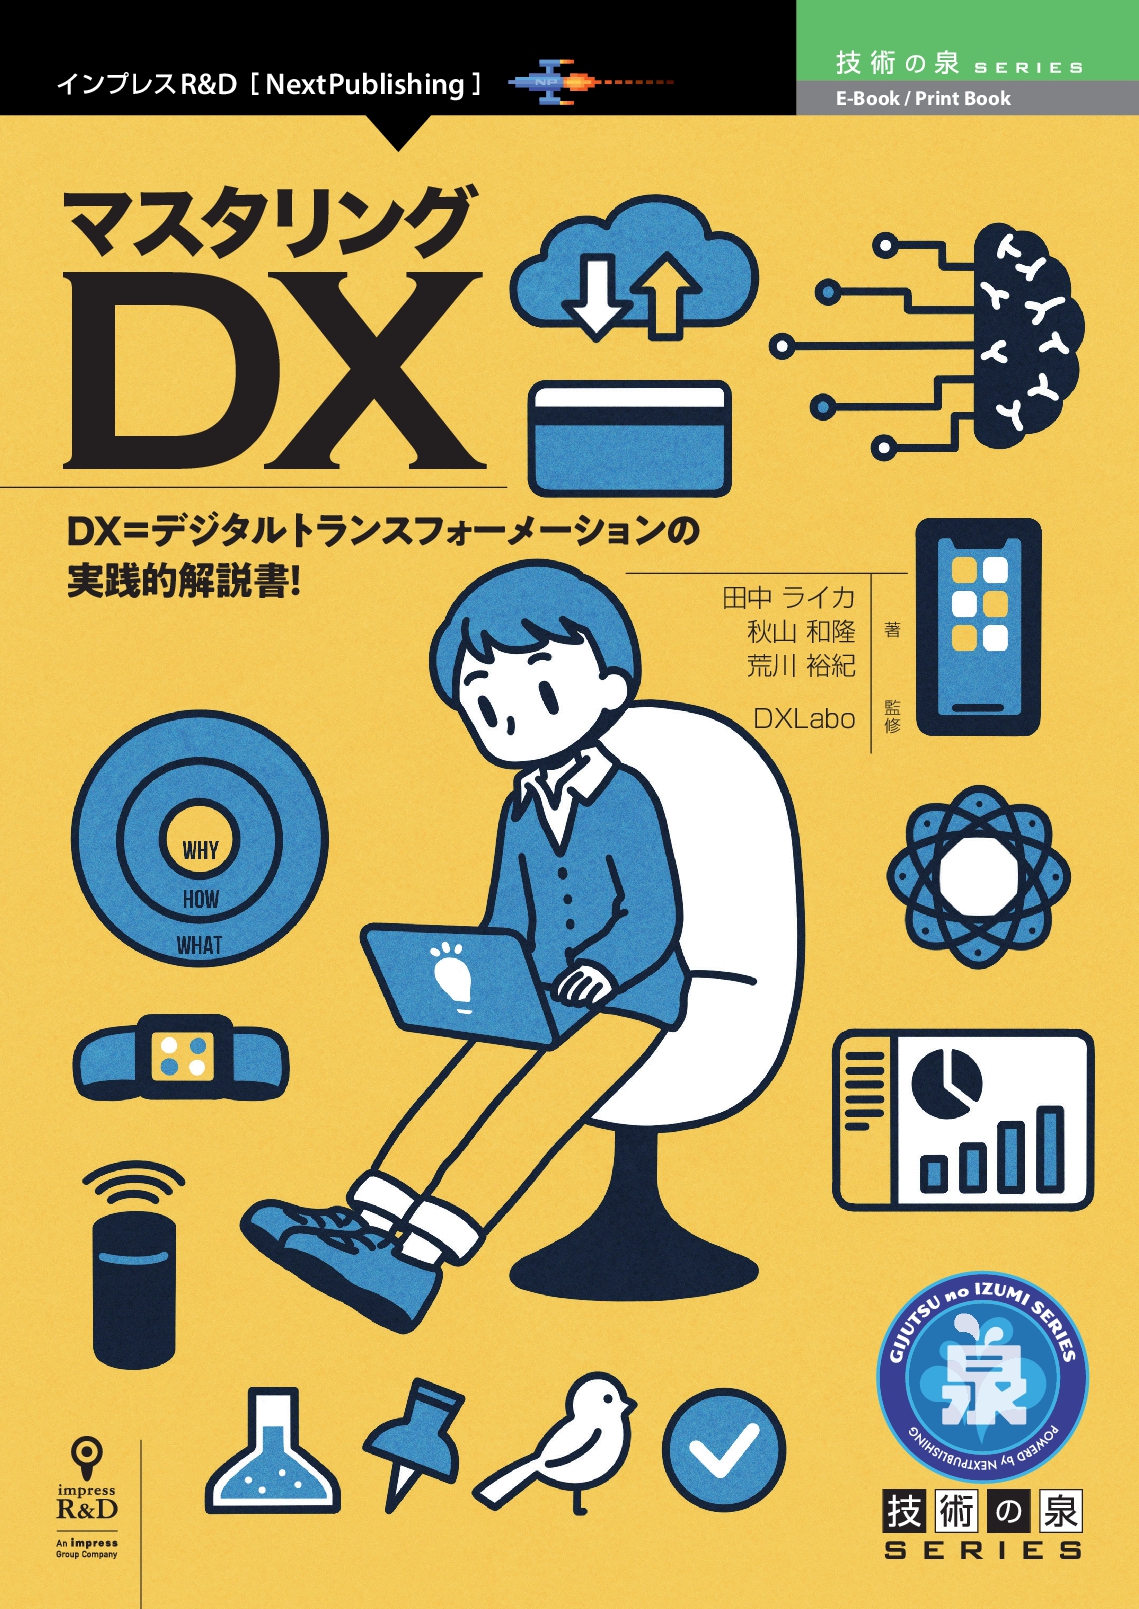 DX=デジタルトランスフォーメーションの実践的解説書！ 『マスタリング 